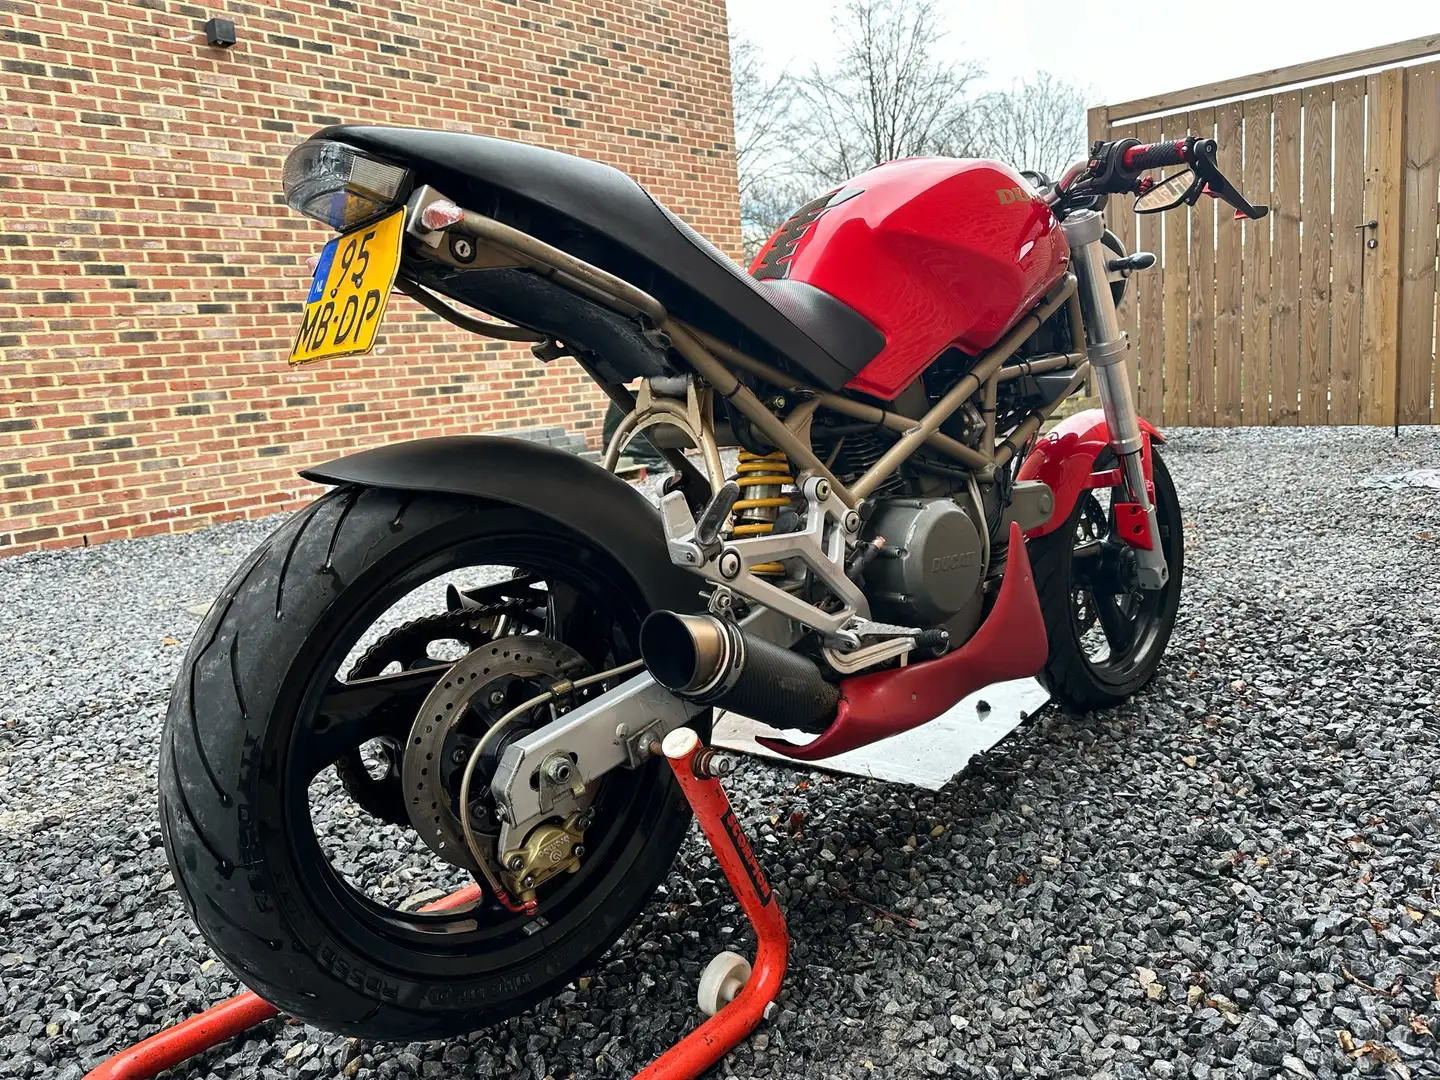 Ducati Monster 600 M600 Red - 2